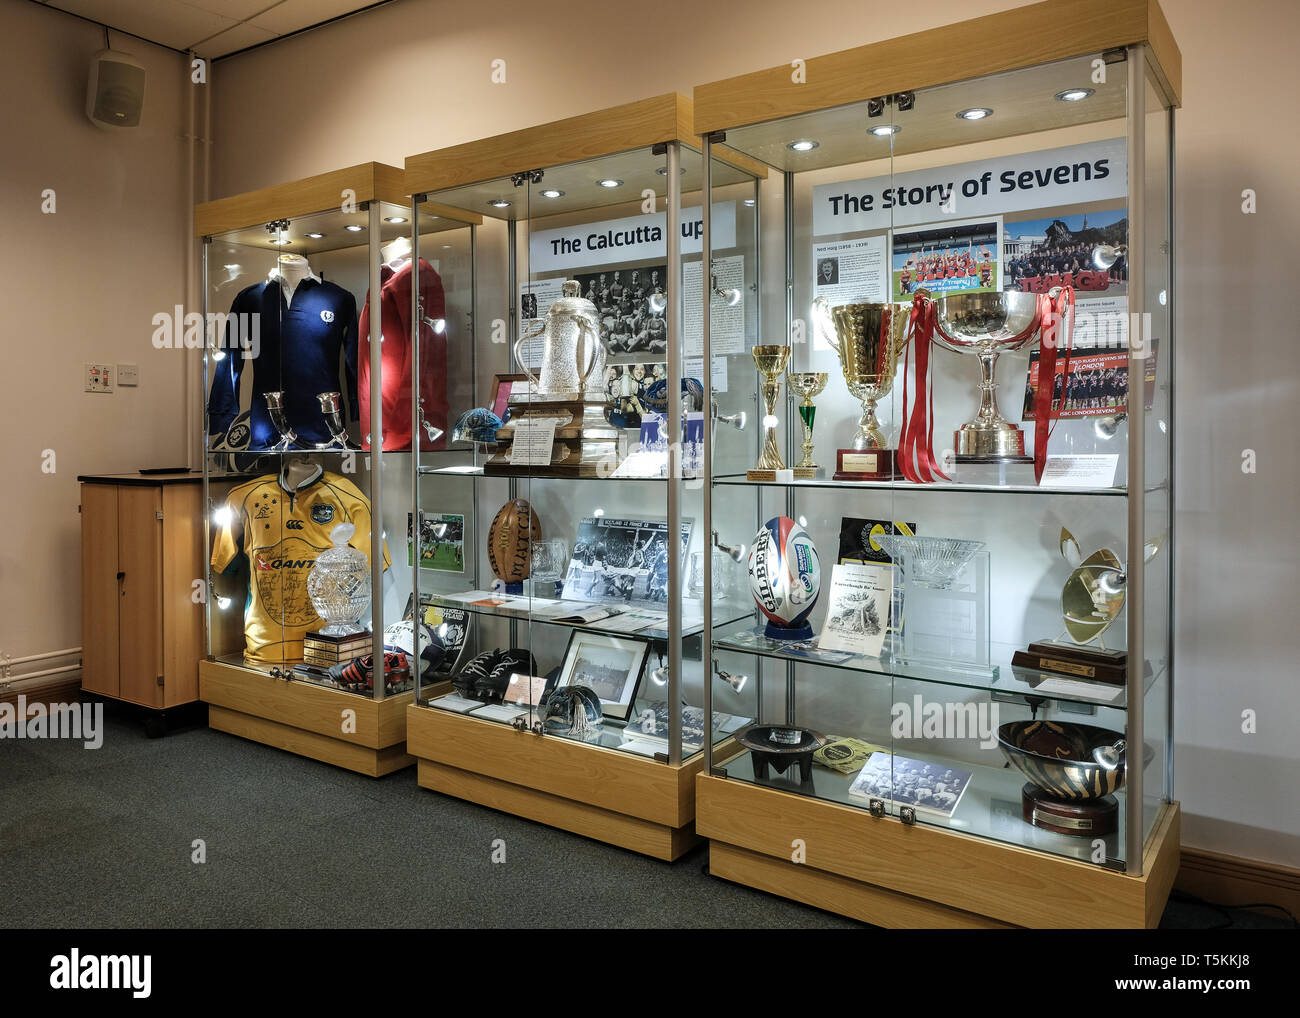 Les armoires de remise des prix, y compris l'original Calcutta Cup, au stade de Murrayfield, Edinburgh, East Lothian, Scotland Banque D'Images